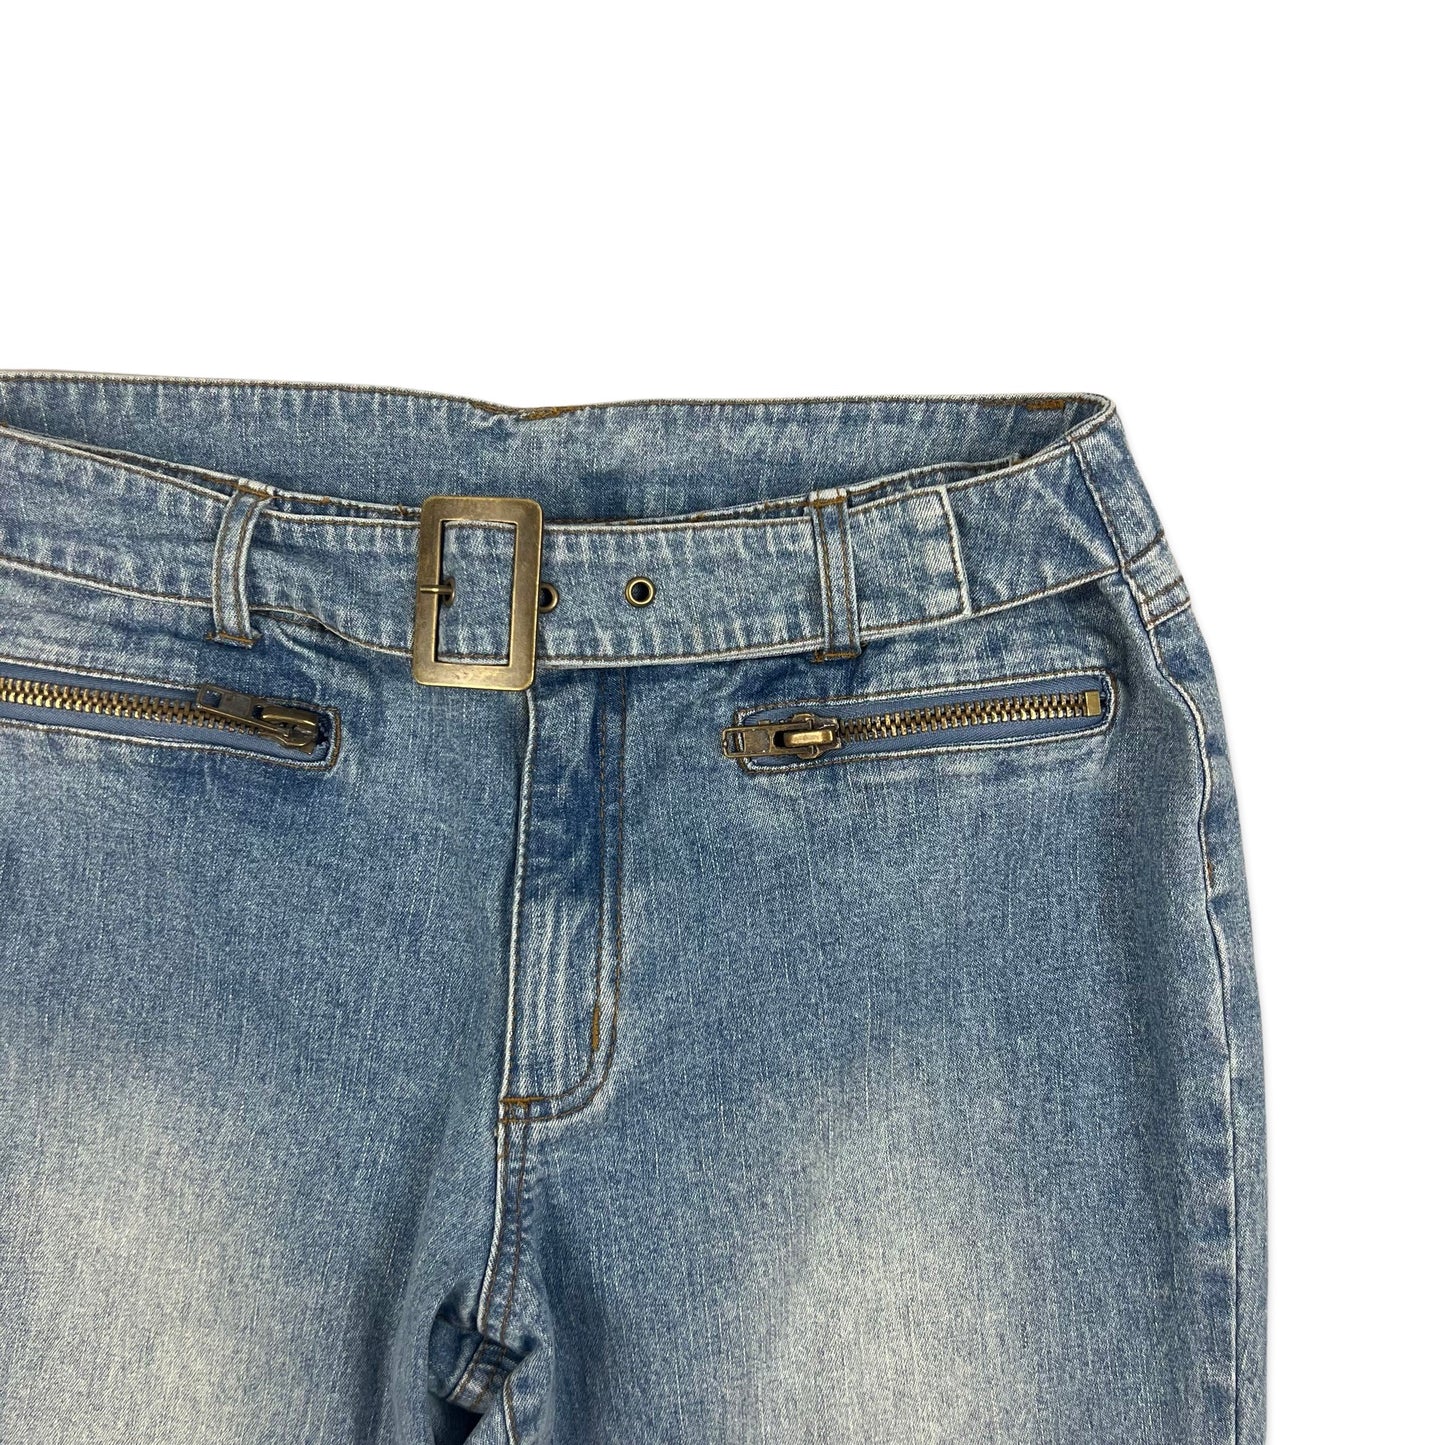 Y2K Vintage Bluse Belted Flared Jeans 14